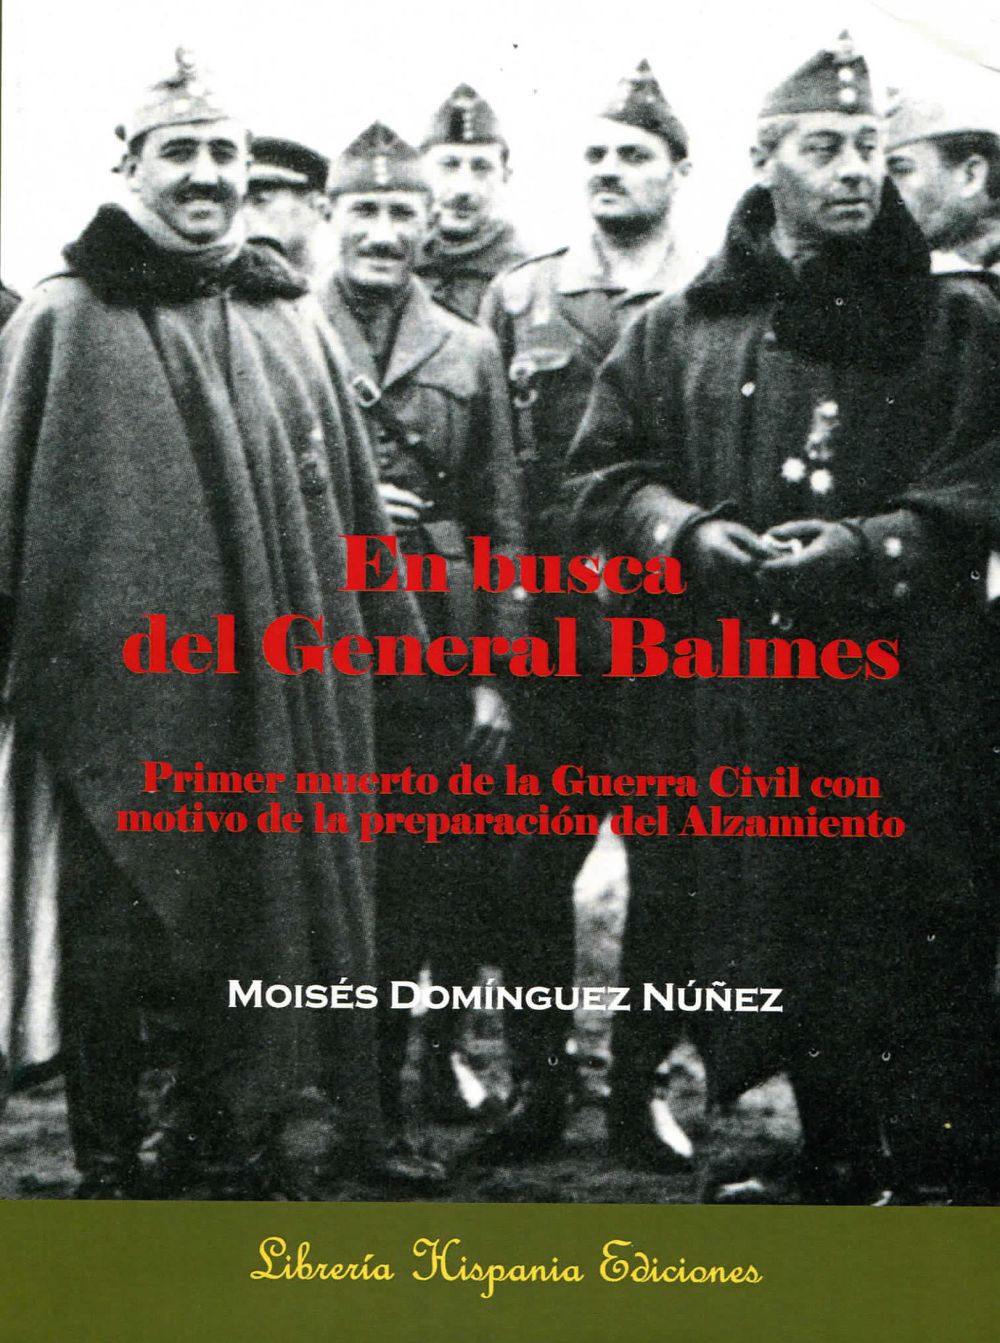 Carátula del libro de Moisés Domínguez.